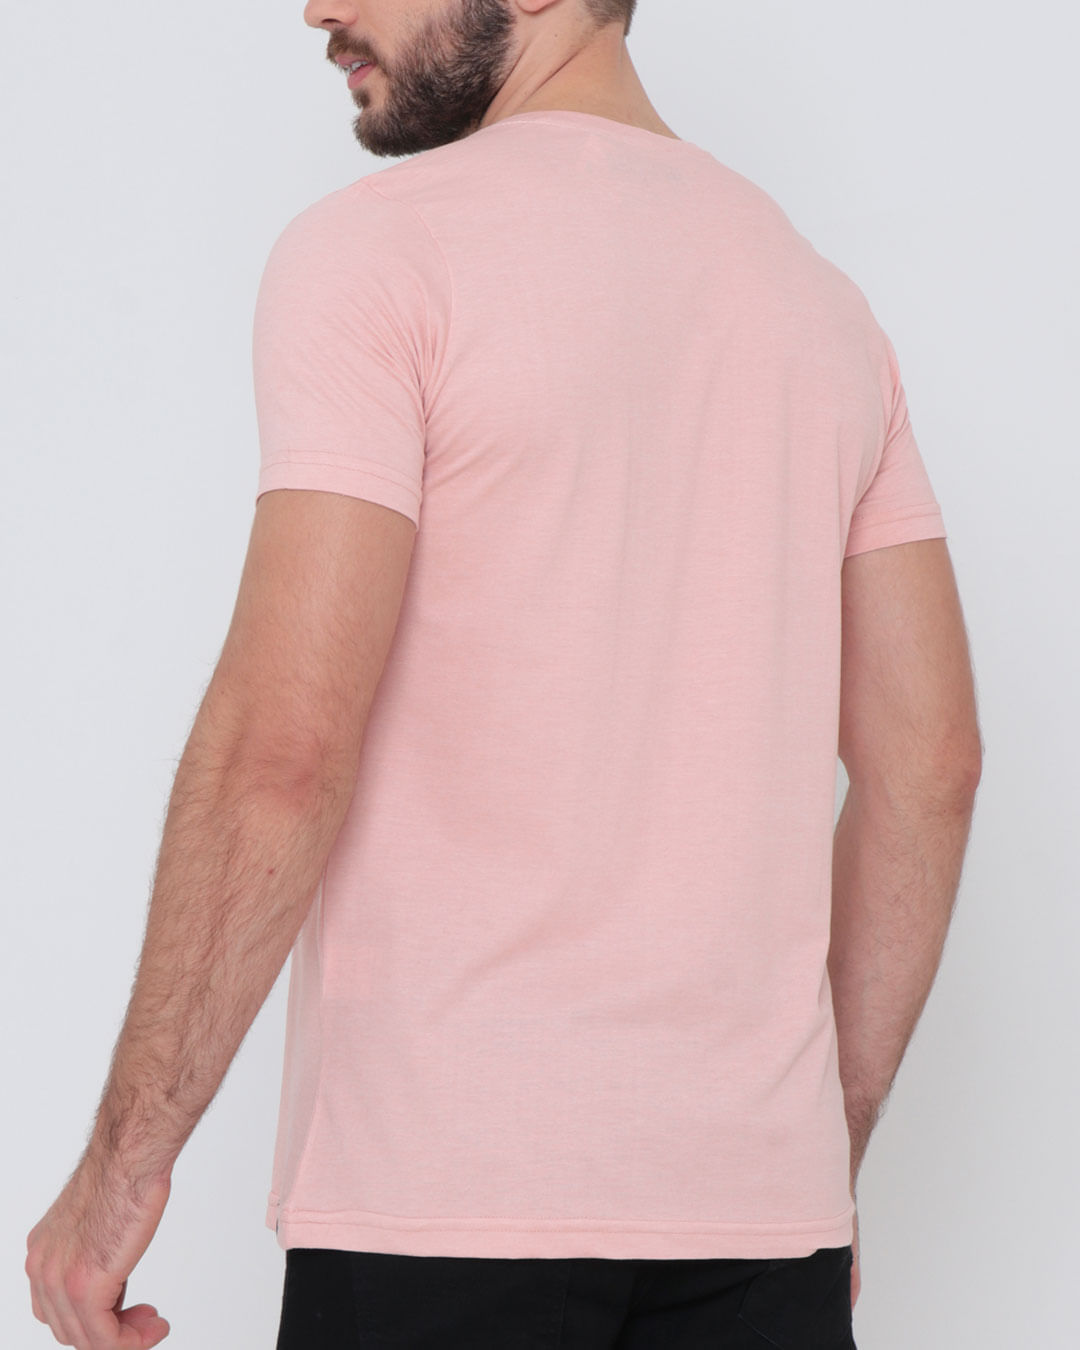 Camiseta-Manga-Curta-Estampada-Rosa-Claro-